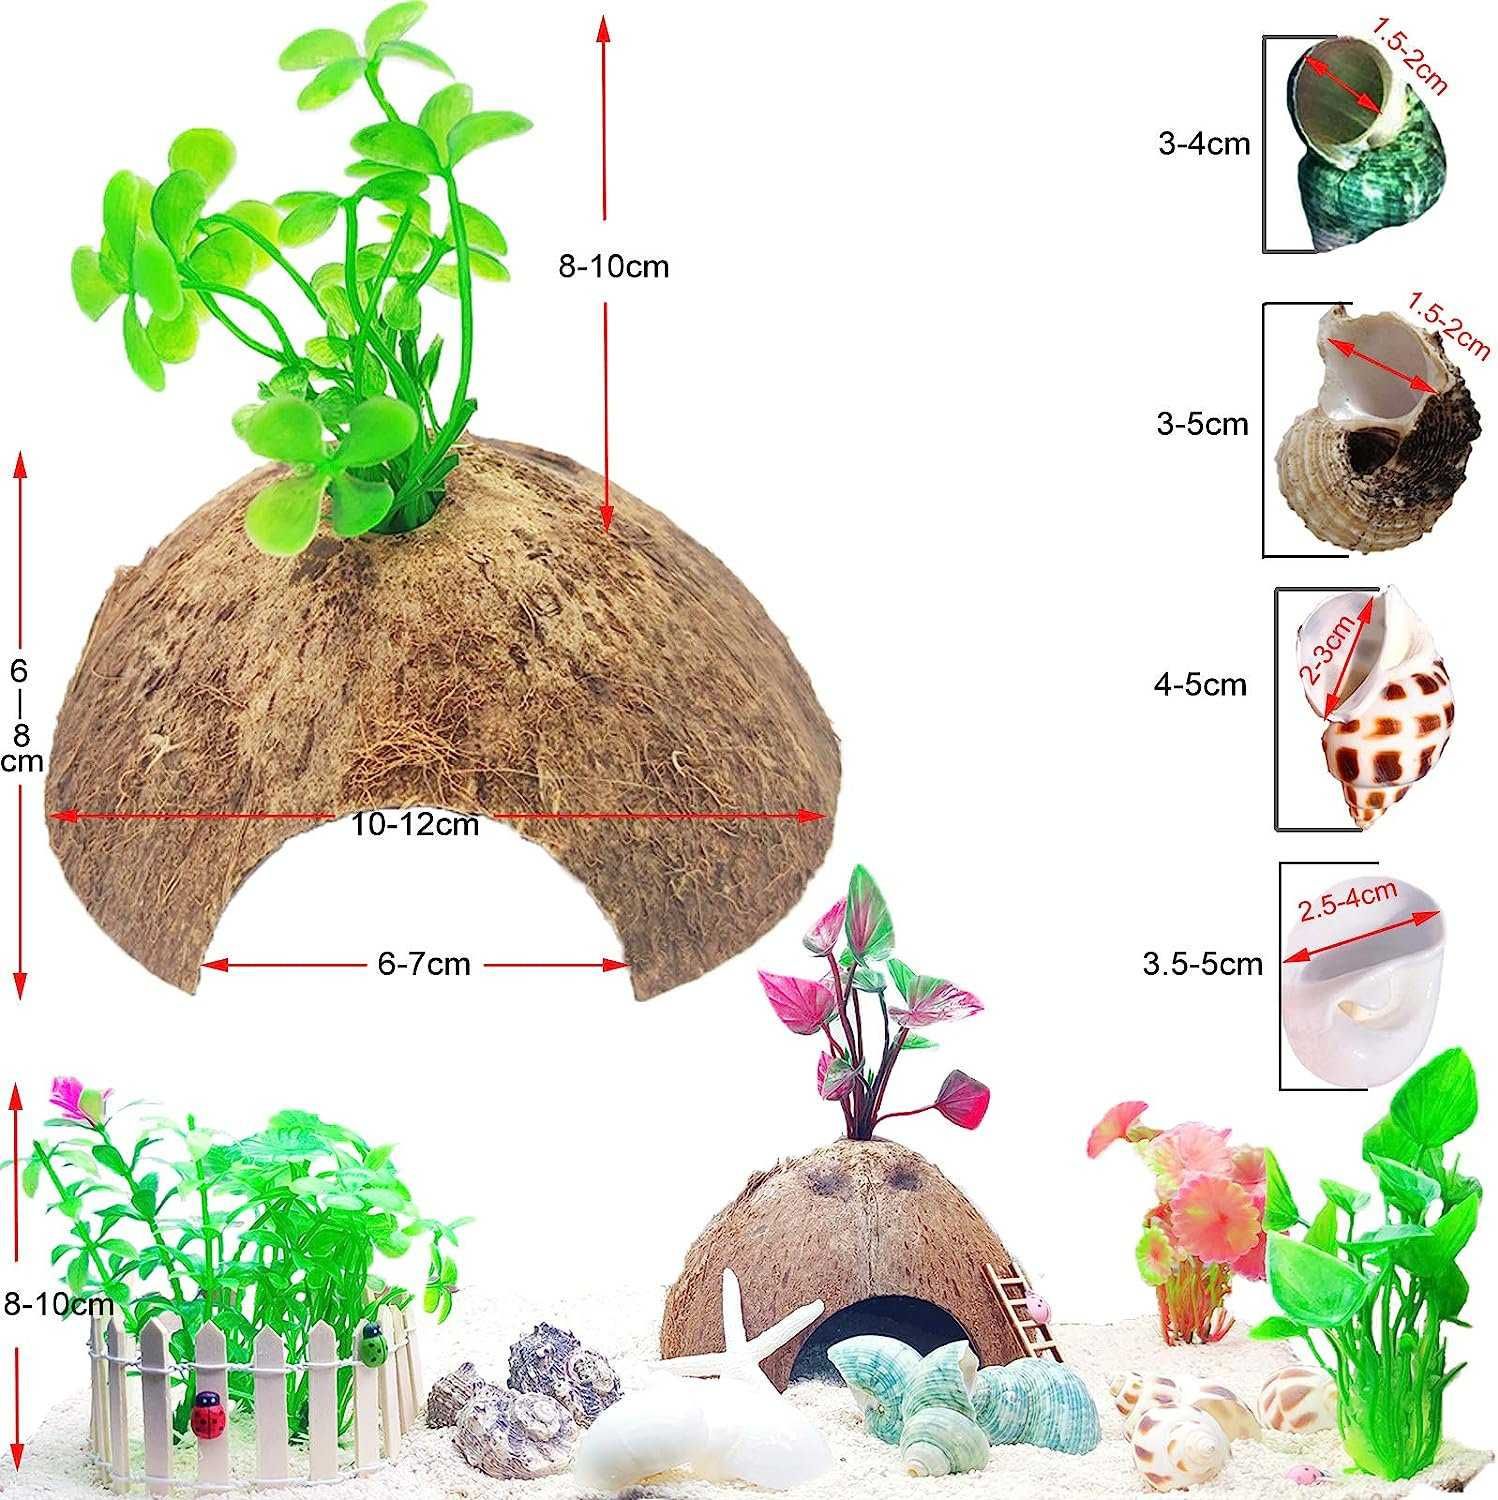 Kokos połówka, kryjówka do terrarium lub akwarium + 6 roślin, muszelki